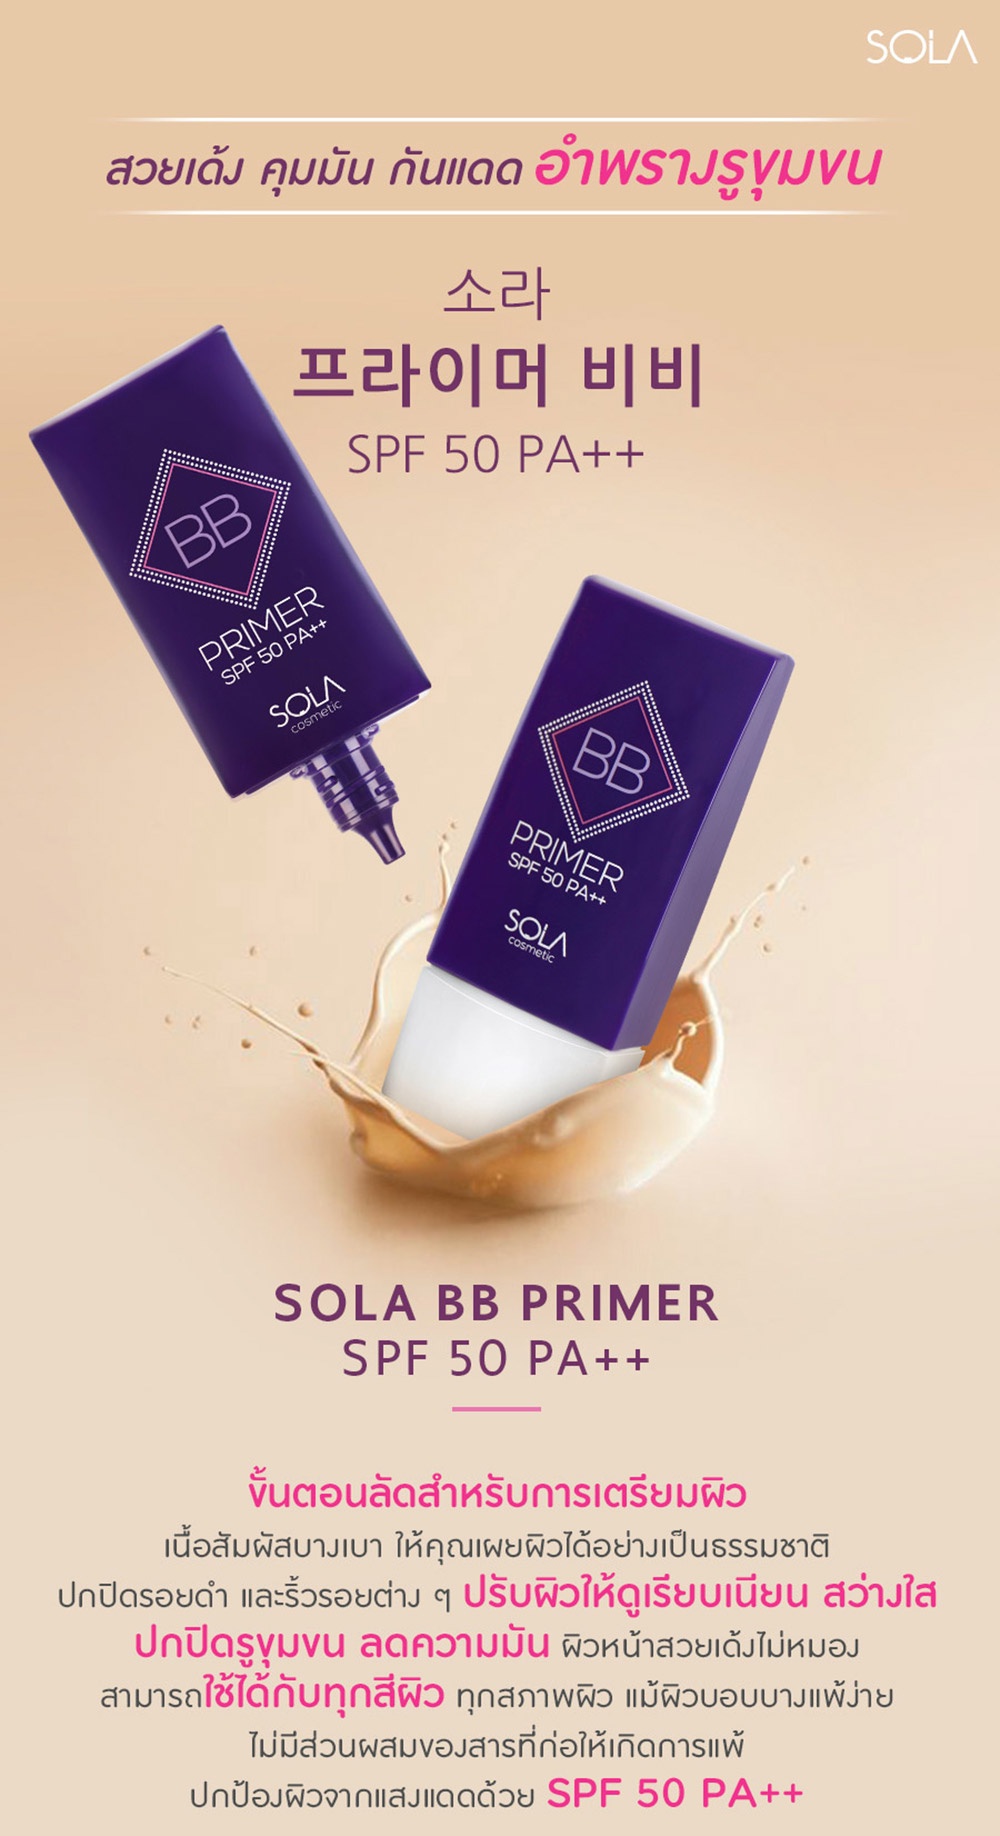 รายละเอียดเพิ่มเติมเกี่ยวกับ Sola BB Primer SPF50 PA++ โซลา บีบี ไพรเมอร์ ปริมาณ 37ml